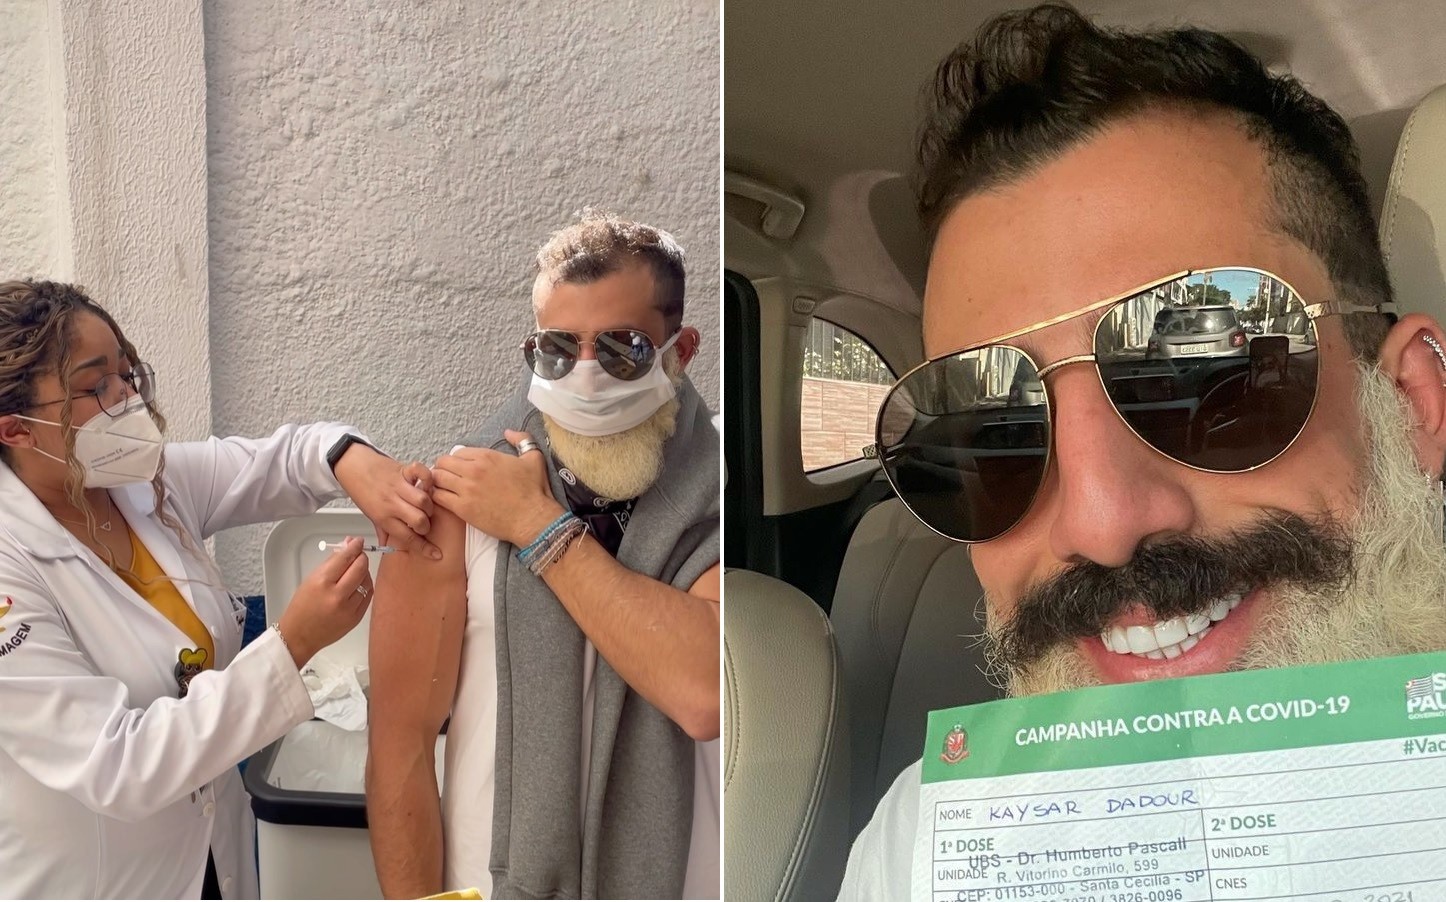 Kaysar Dadour é vacinado contra Covid-19 (Foto: Reprodução/Instagram)